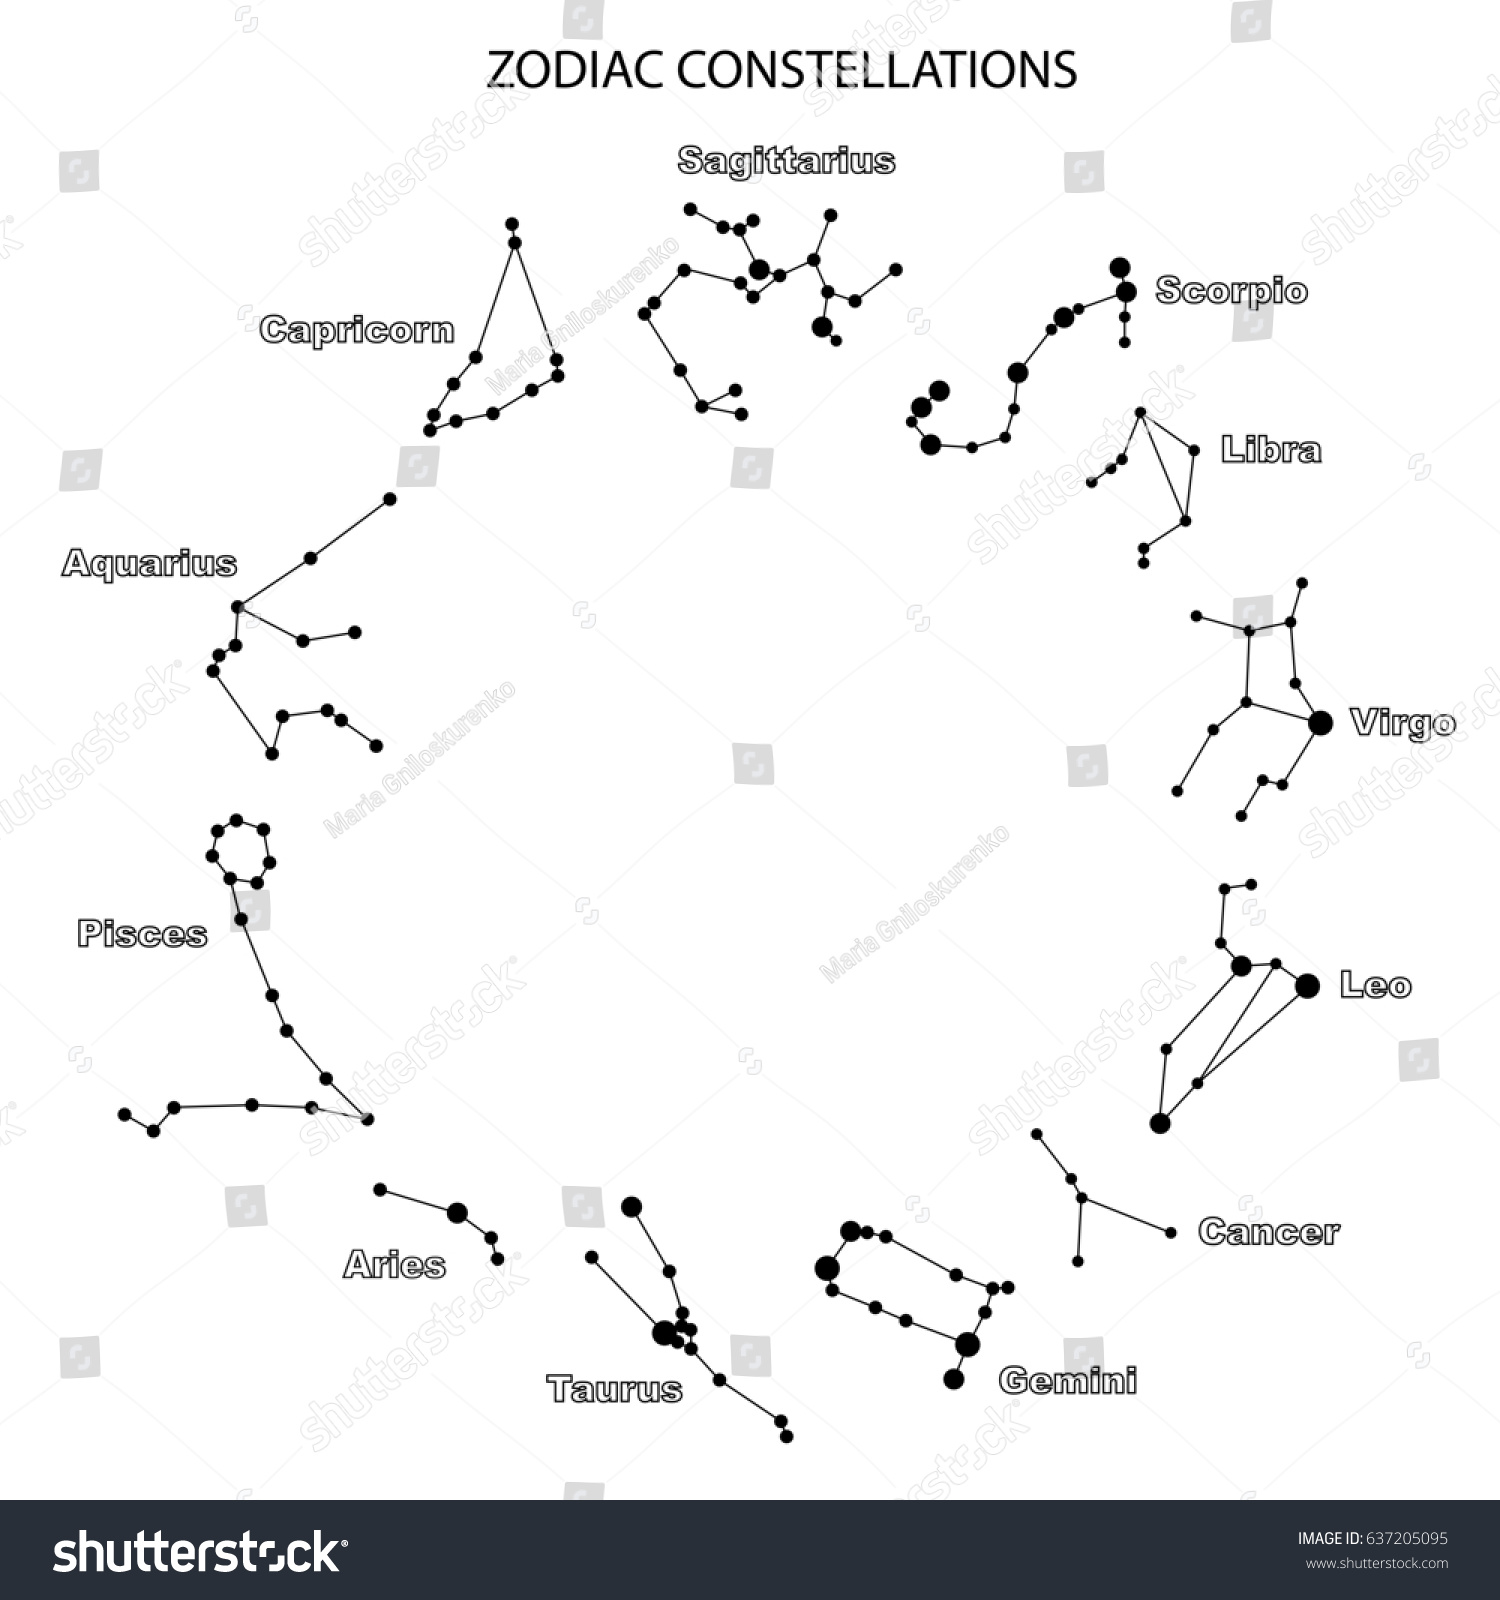 Зодиакальные созвездия на карте звездного неба